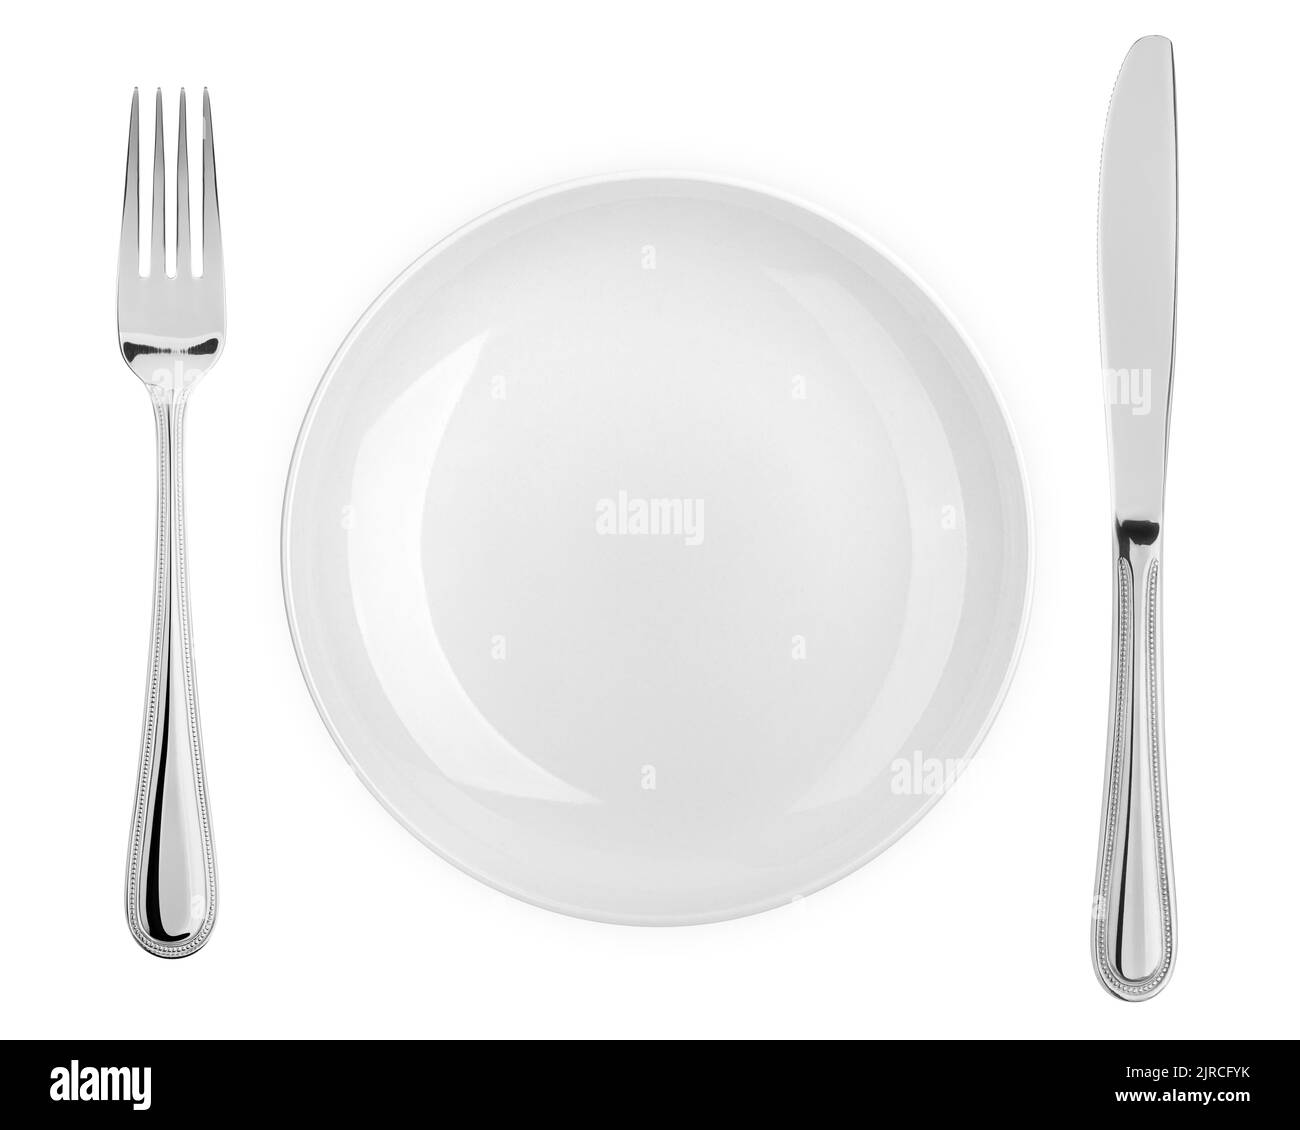 Piatto vuoto, forchetta, coltello, taglierina, posate isolate su sfondo bianco, taglierina, vista dall'alto Foto Stock